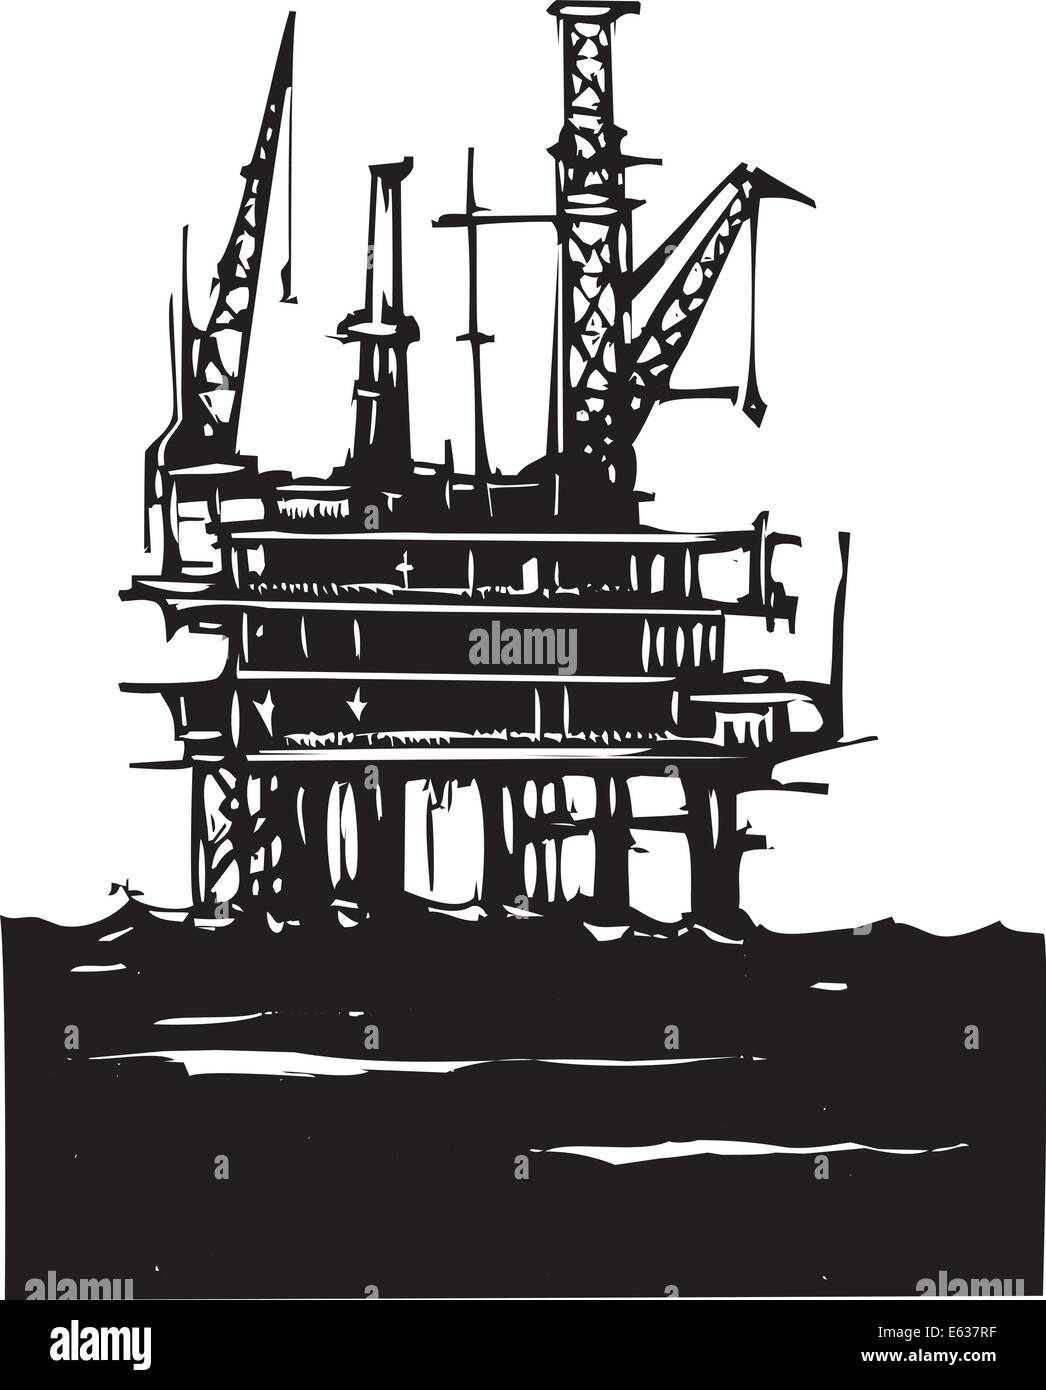 Holzschnitt-Style-Image eines Tiefsee-Offshore-Öl-Rigs Bohrungen auf dem Ozean Stock Vektor